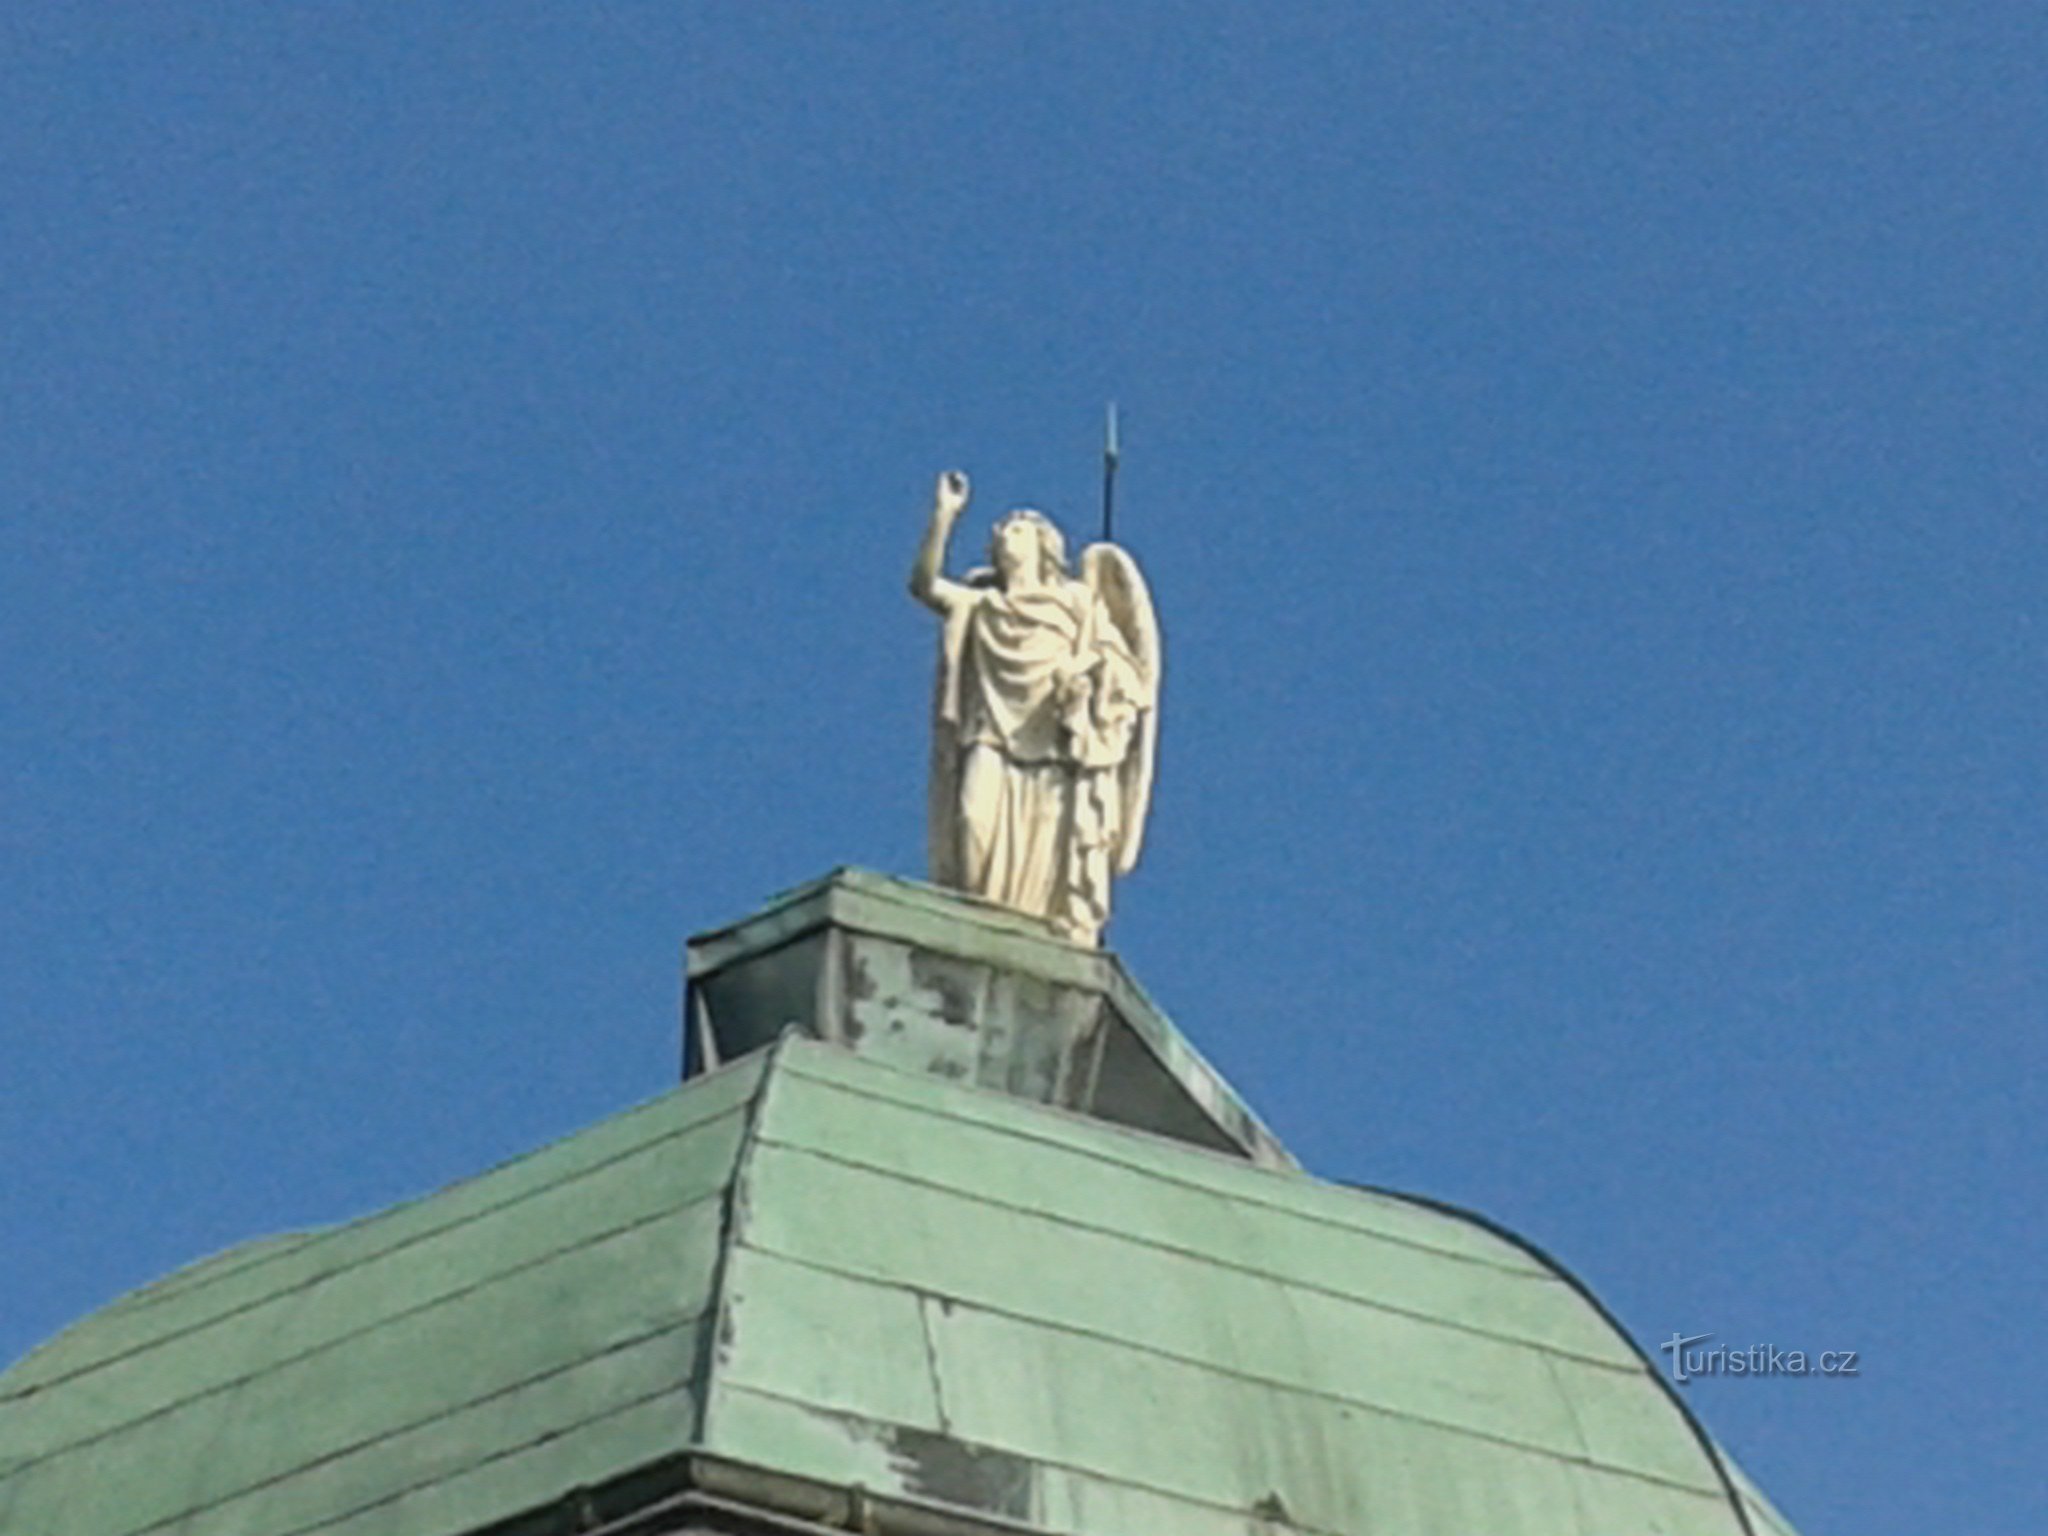 enkelin patsas hallintorakennuksessa